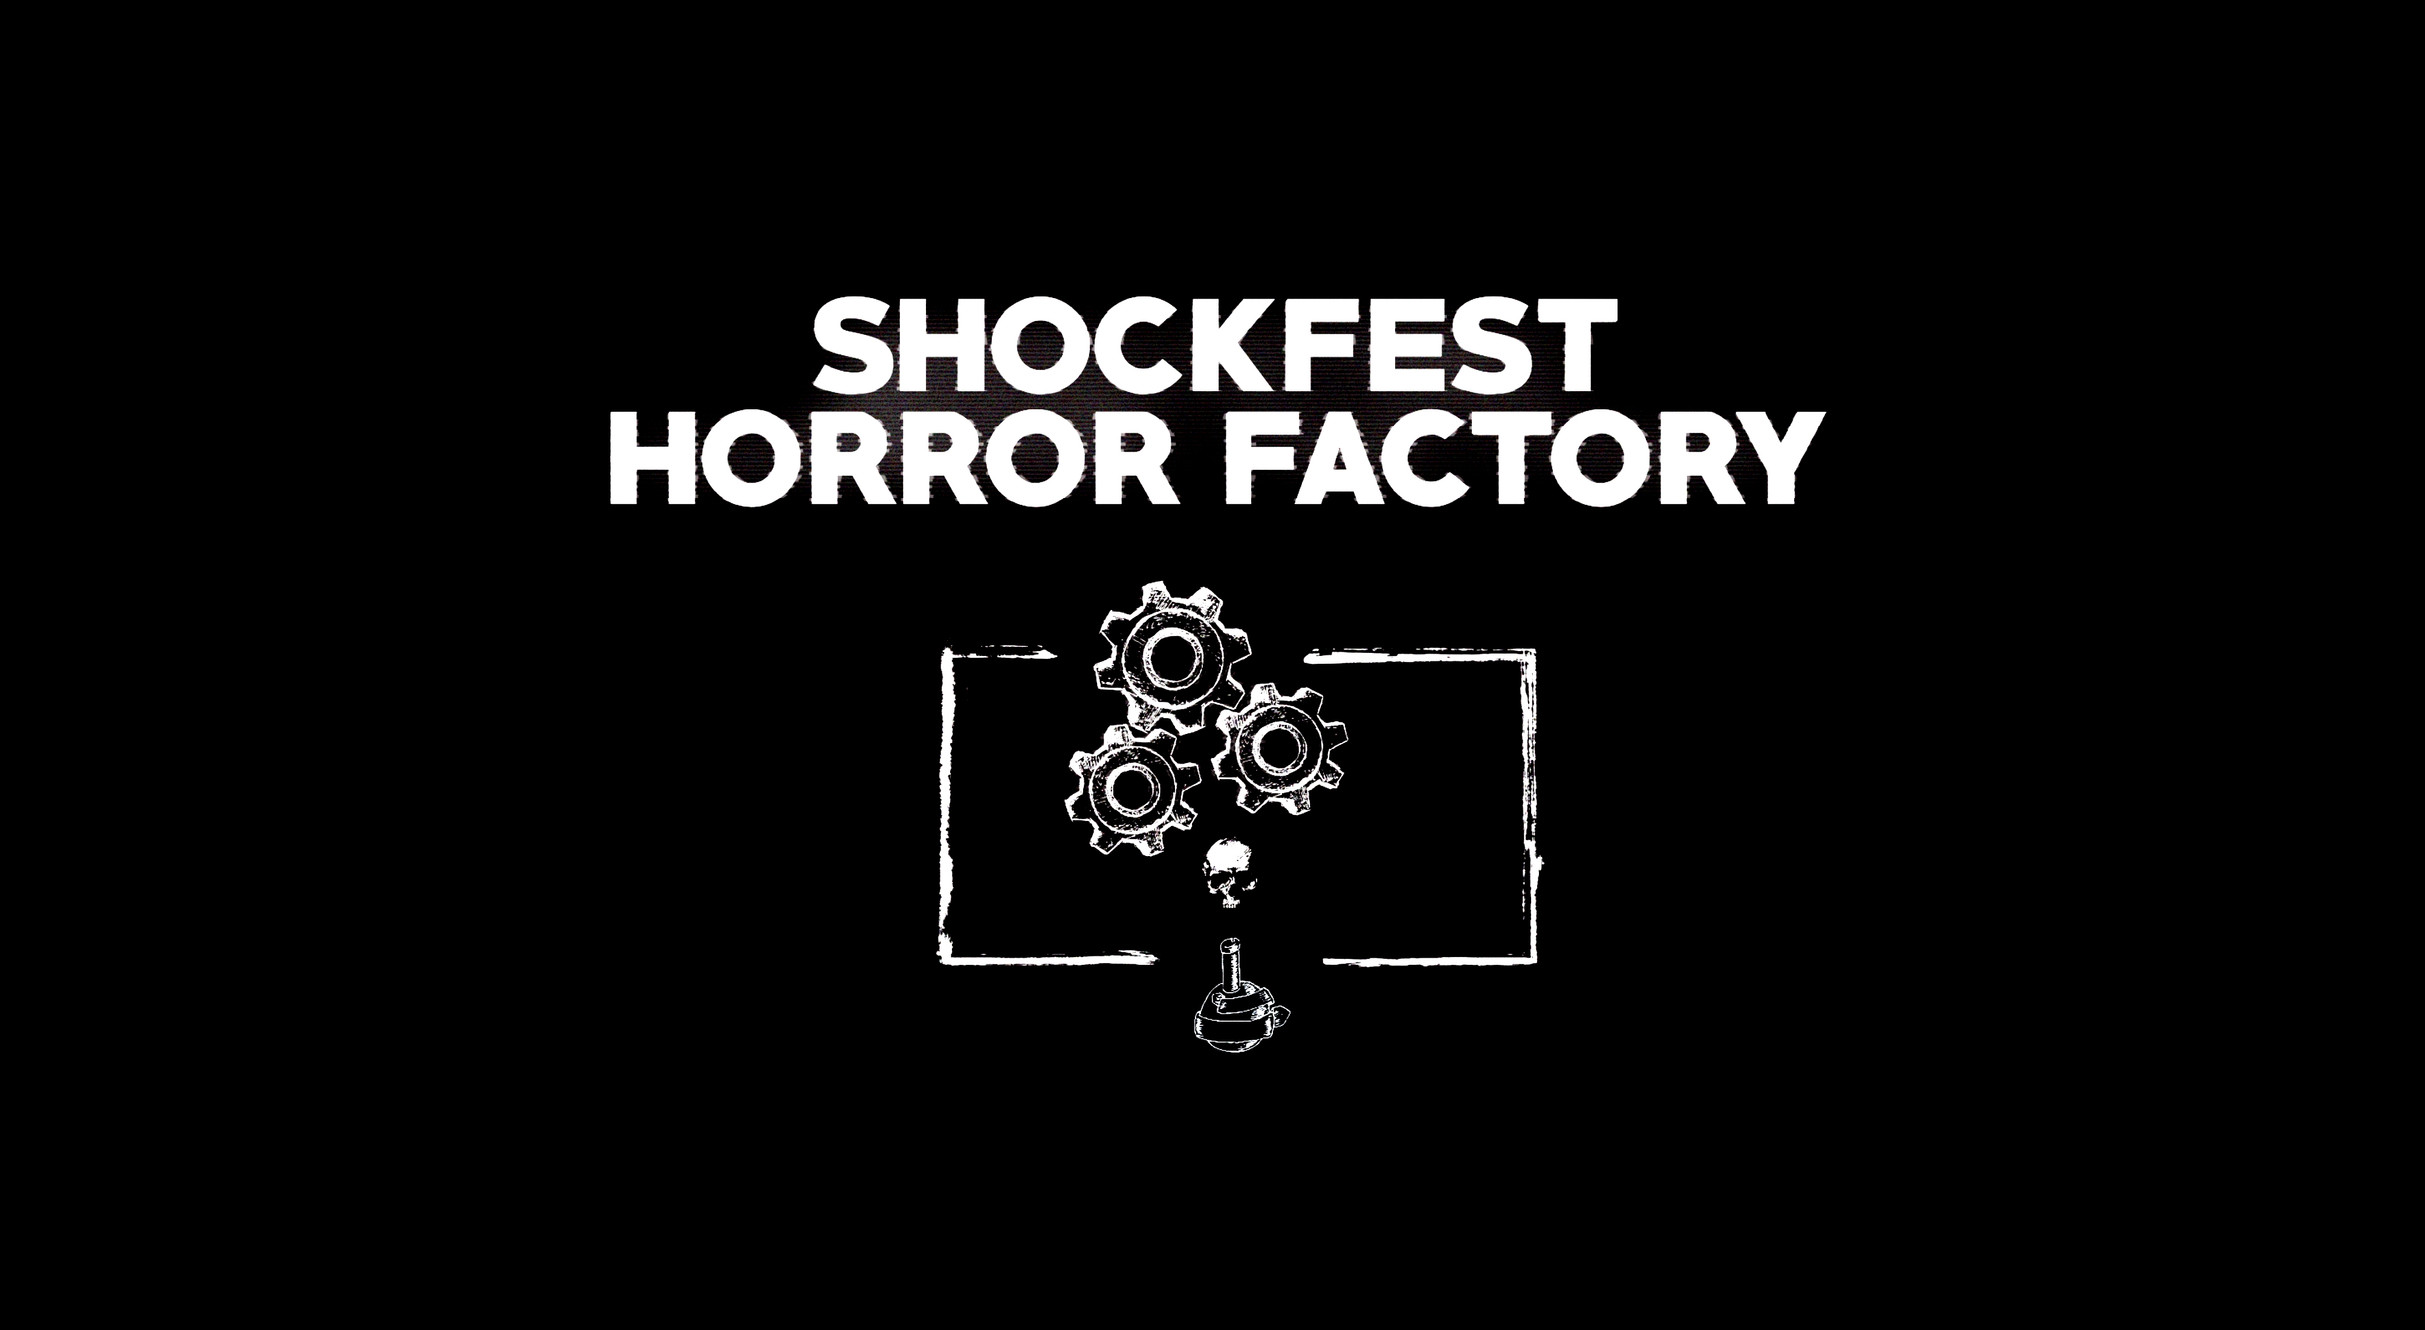 www.shockfilmfest.com